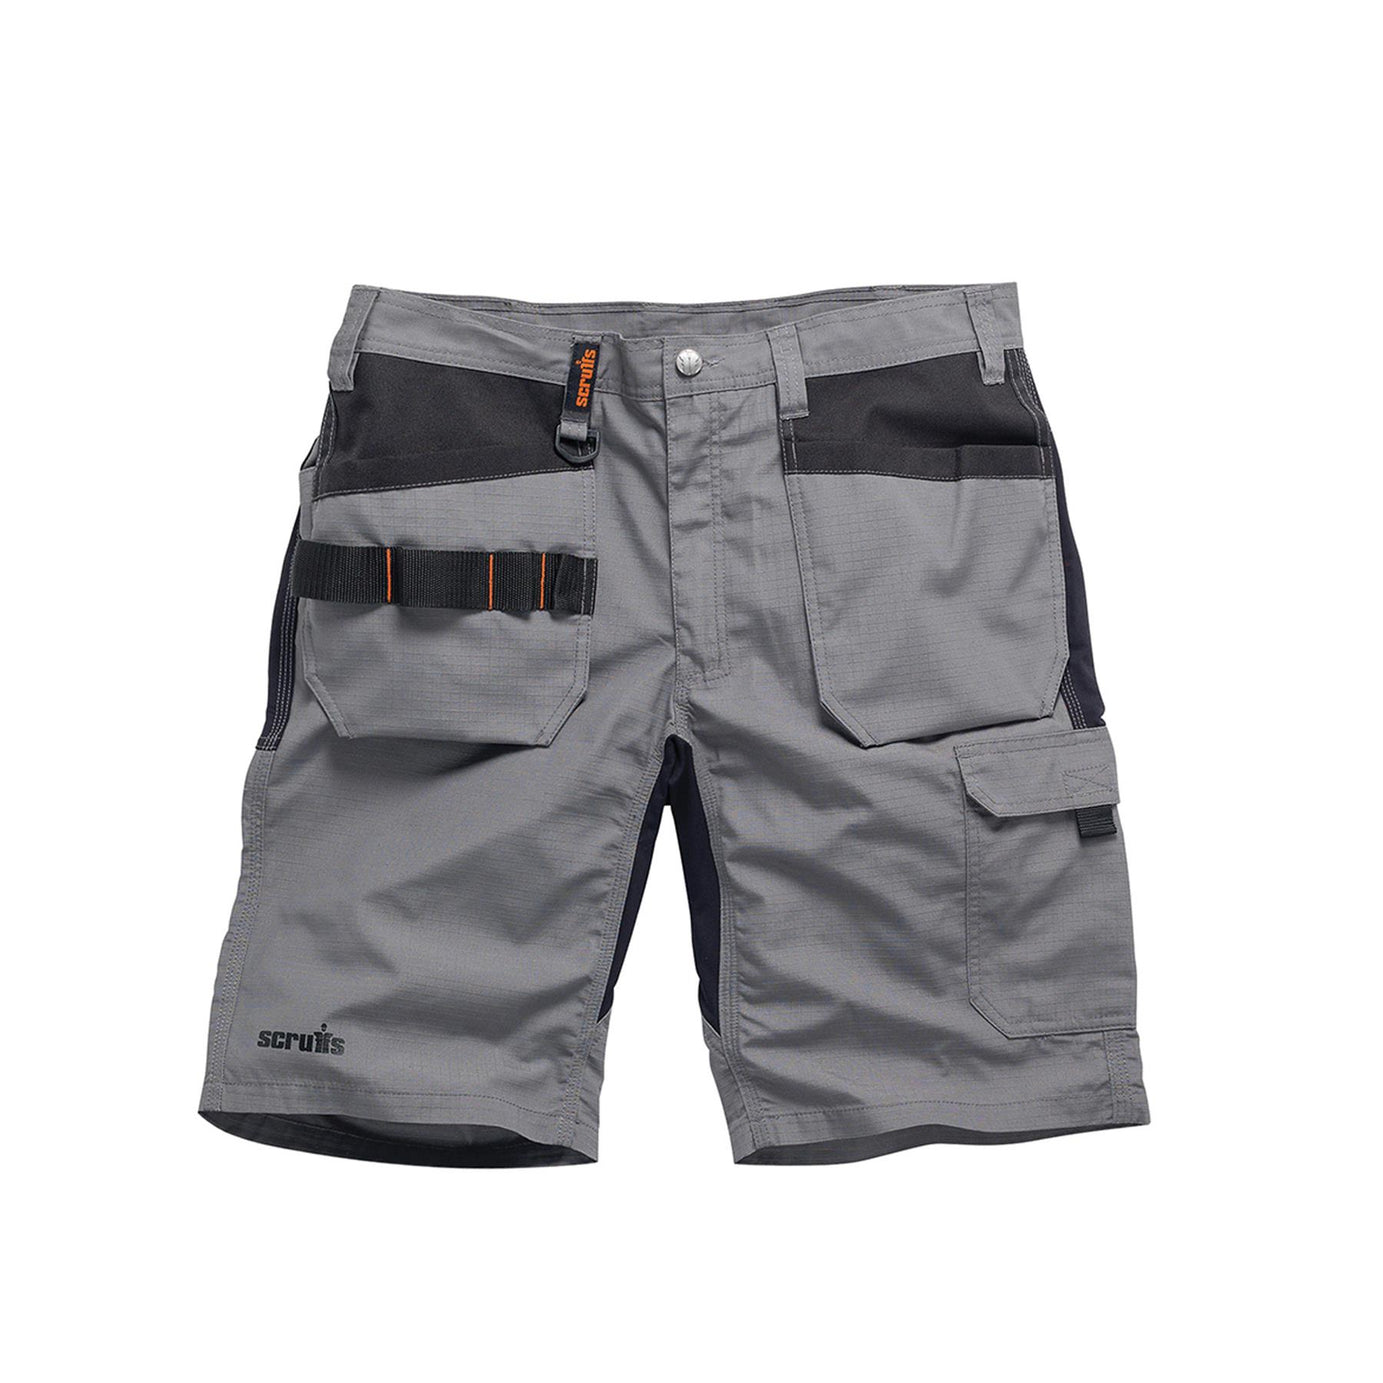 Scruffs Flex Holster Shorts Cargo Combat Pockets Hard Wearing Graphite 30 Waist